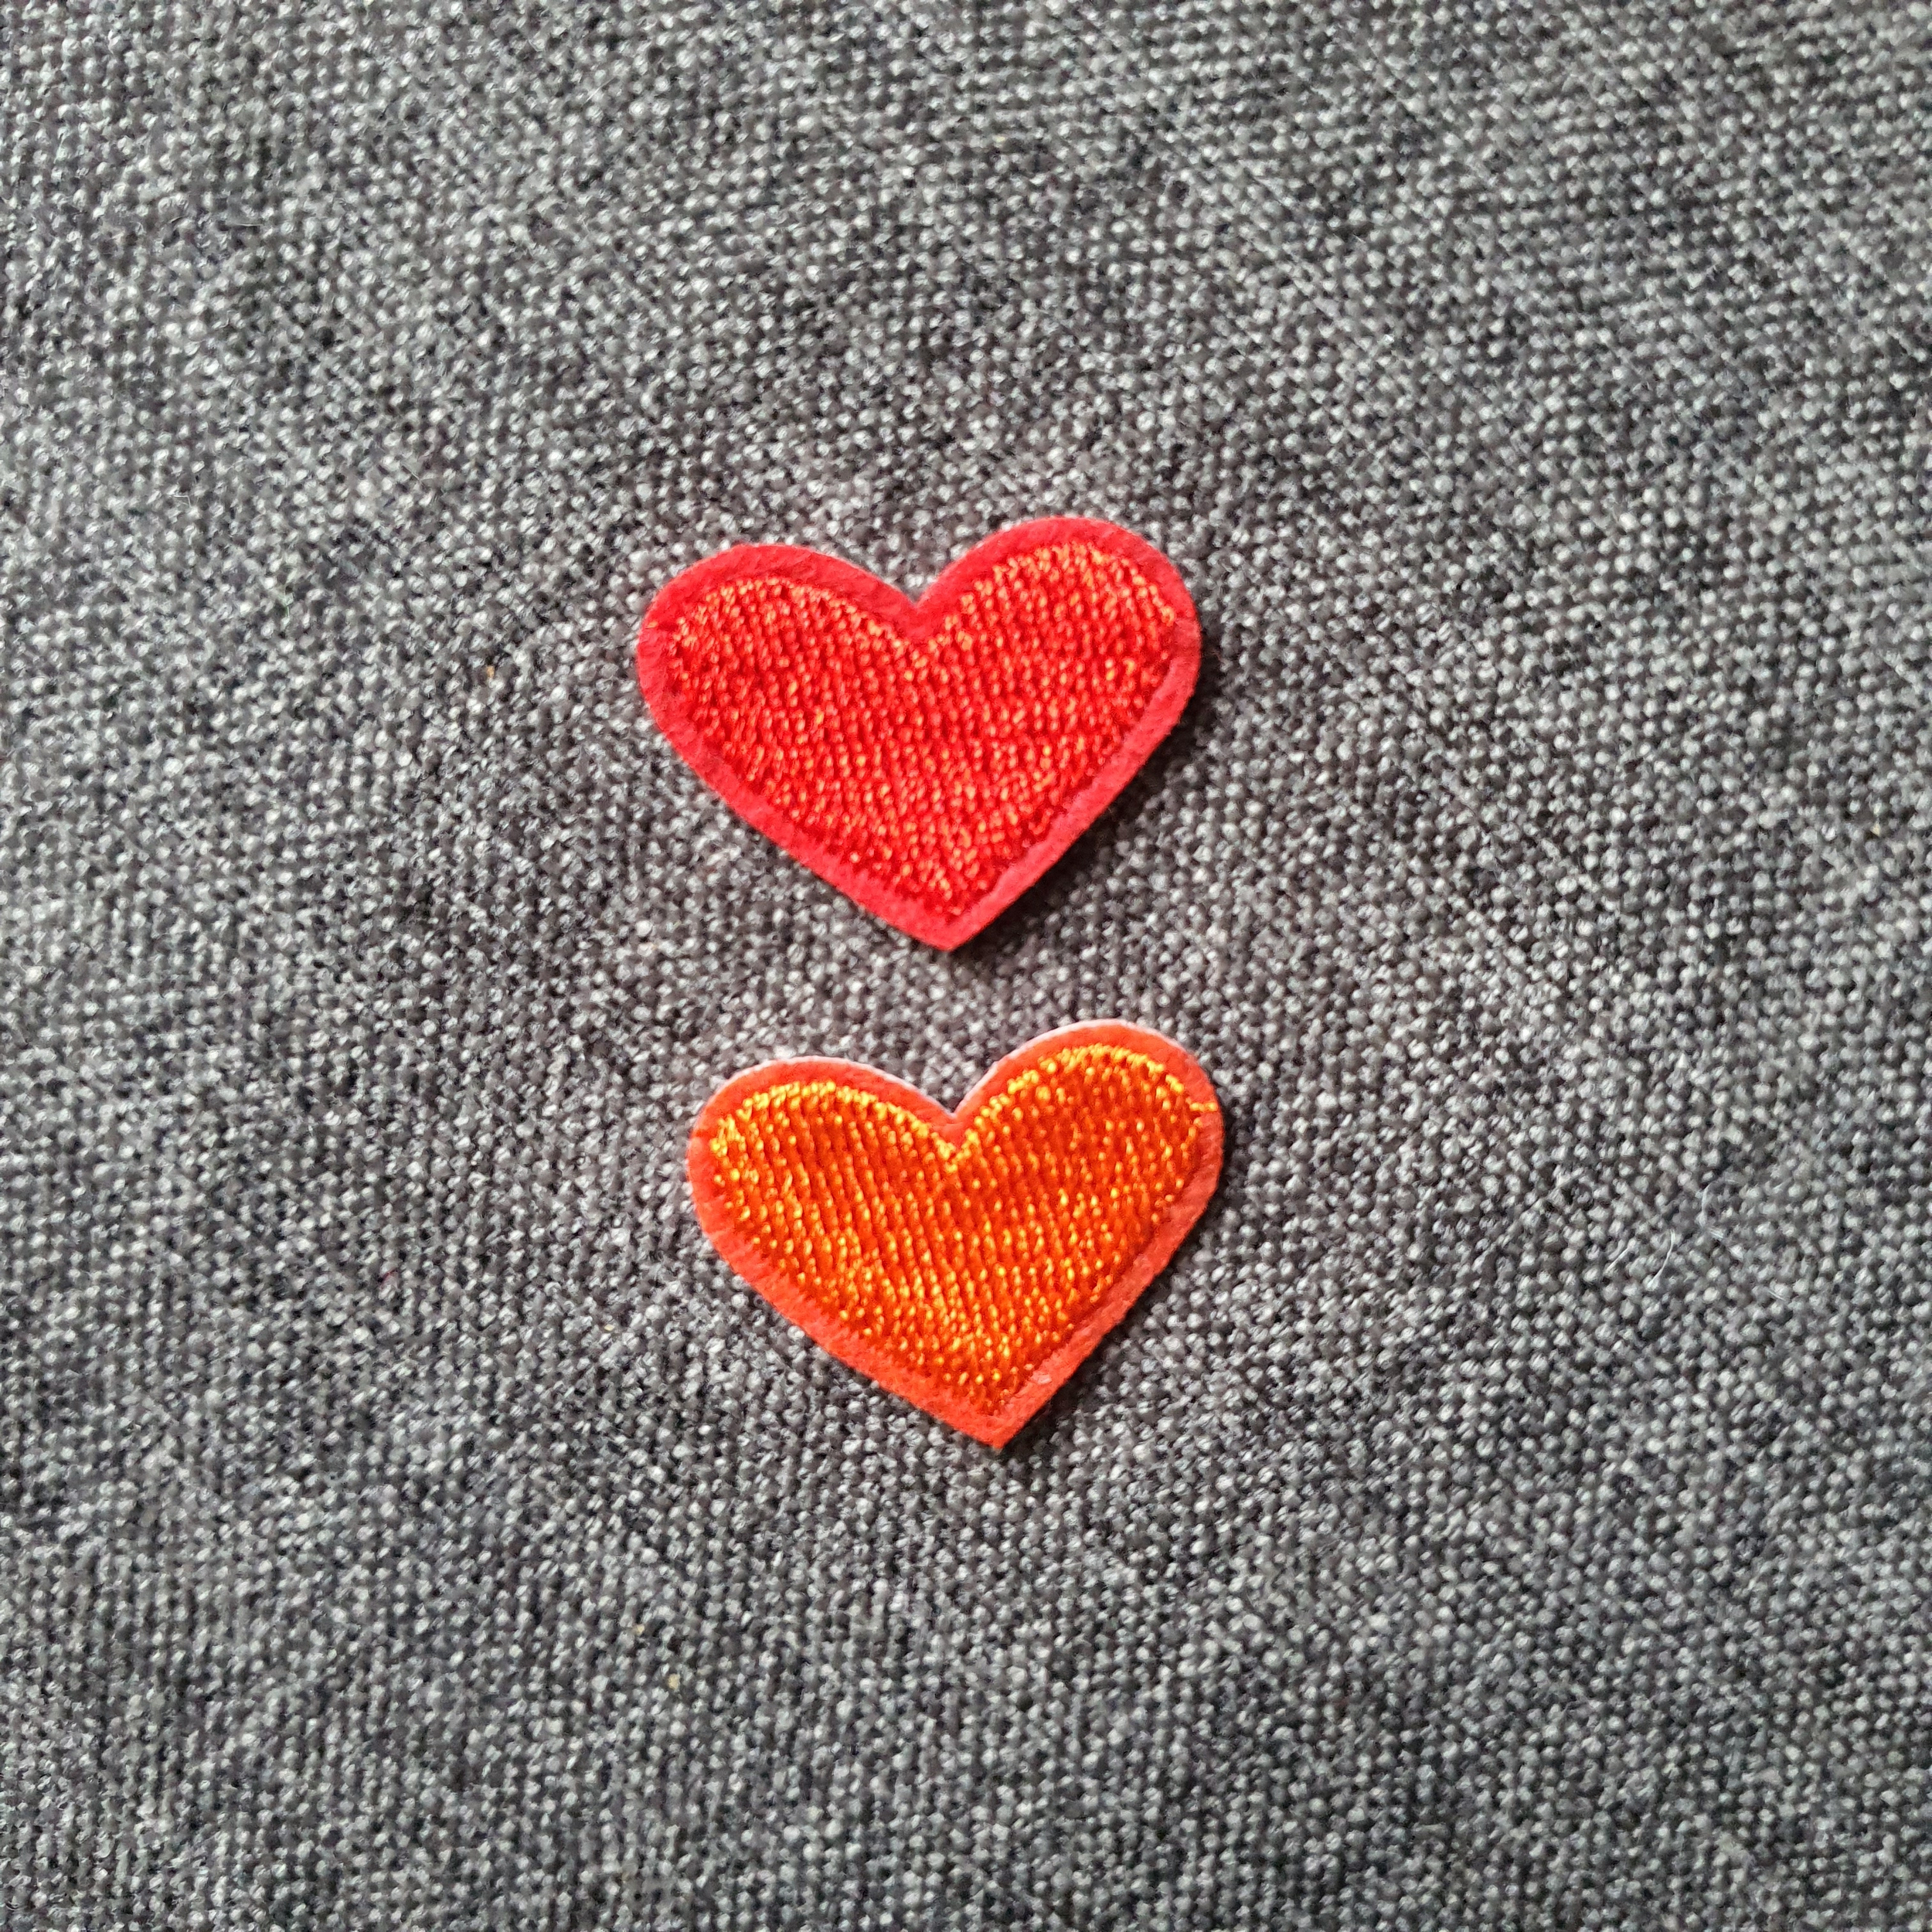 Patch thermocollant duo de petits cœurs colorés rouge et orange